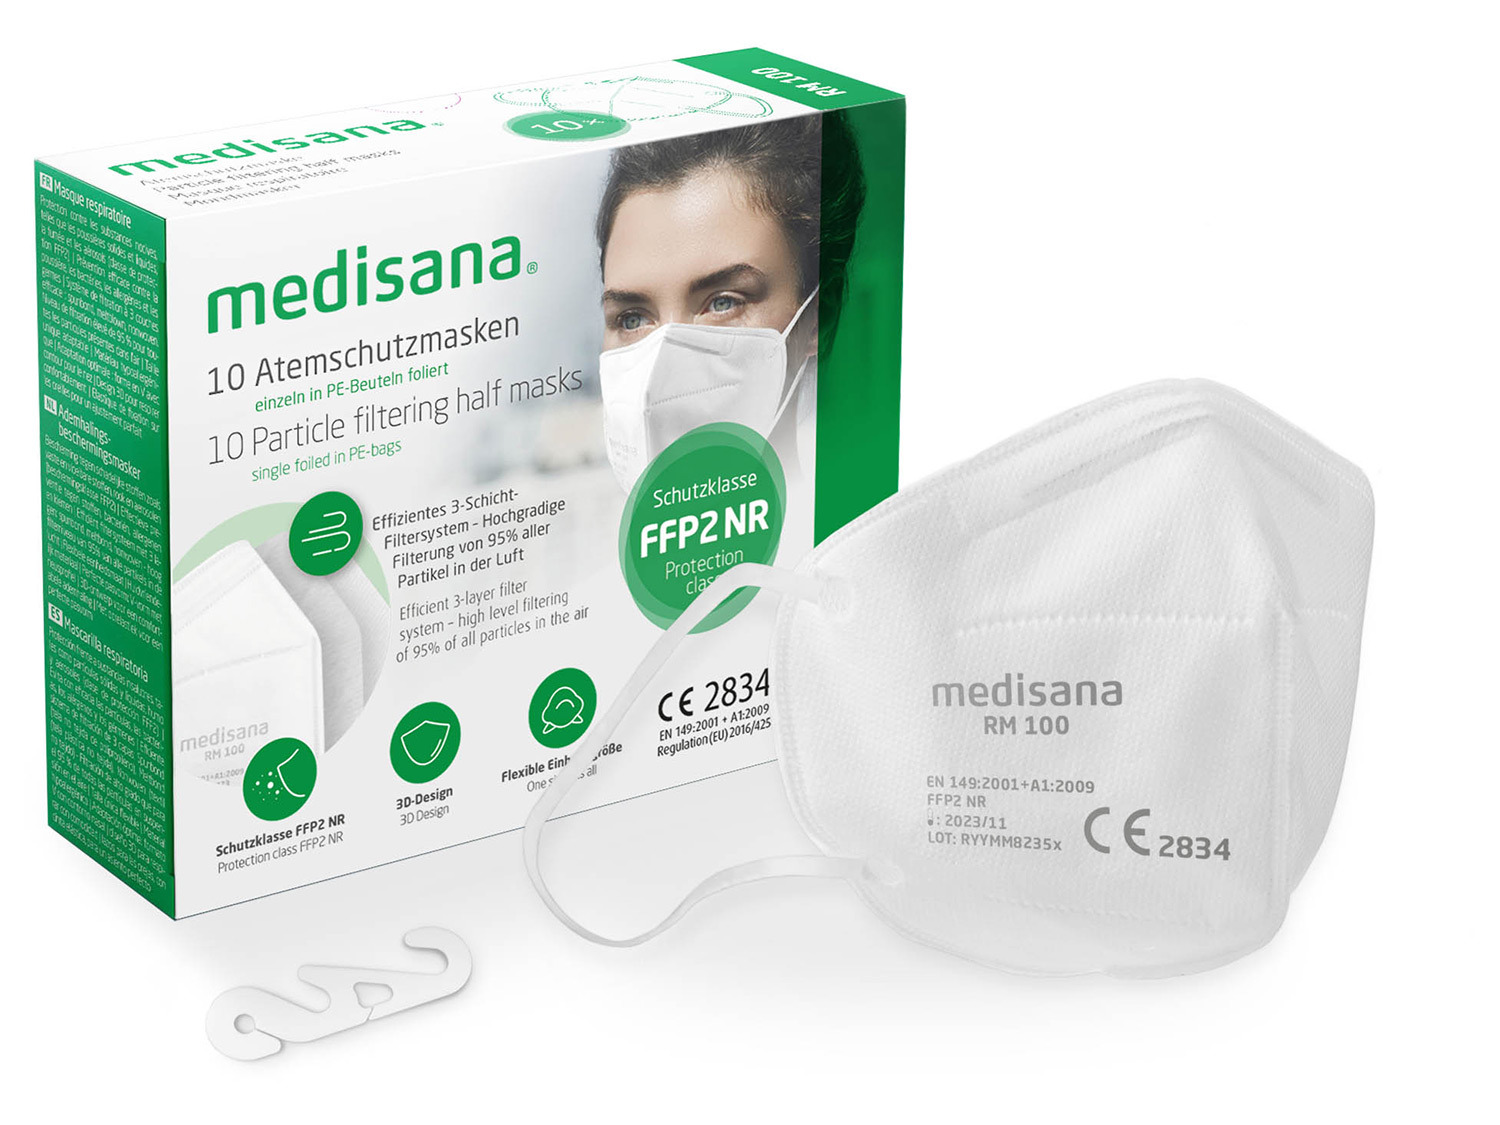 100 RM FFP2 LIDL 10pcs/set MEDISANA | Atemschutzmasken